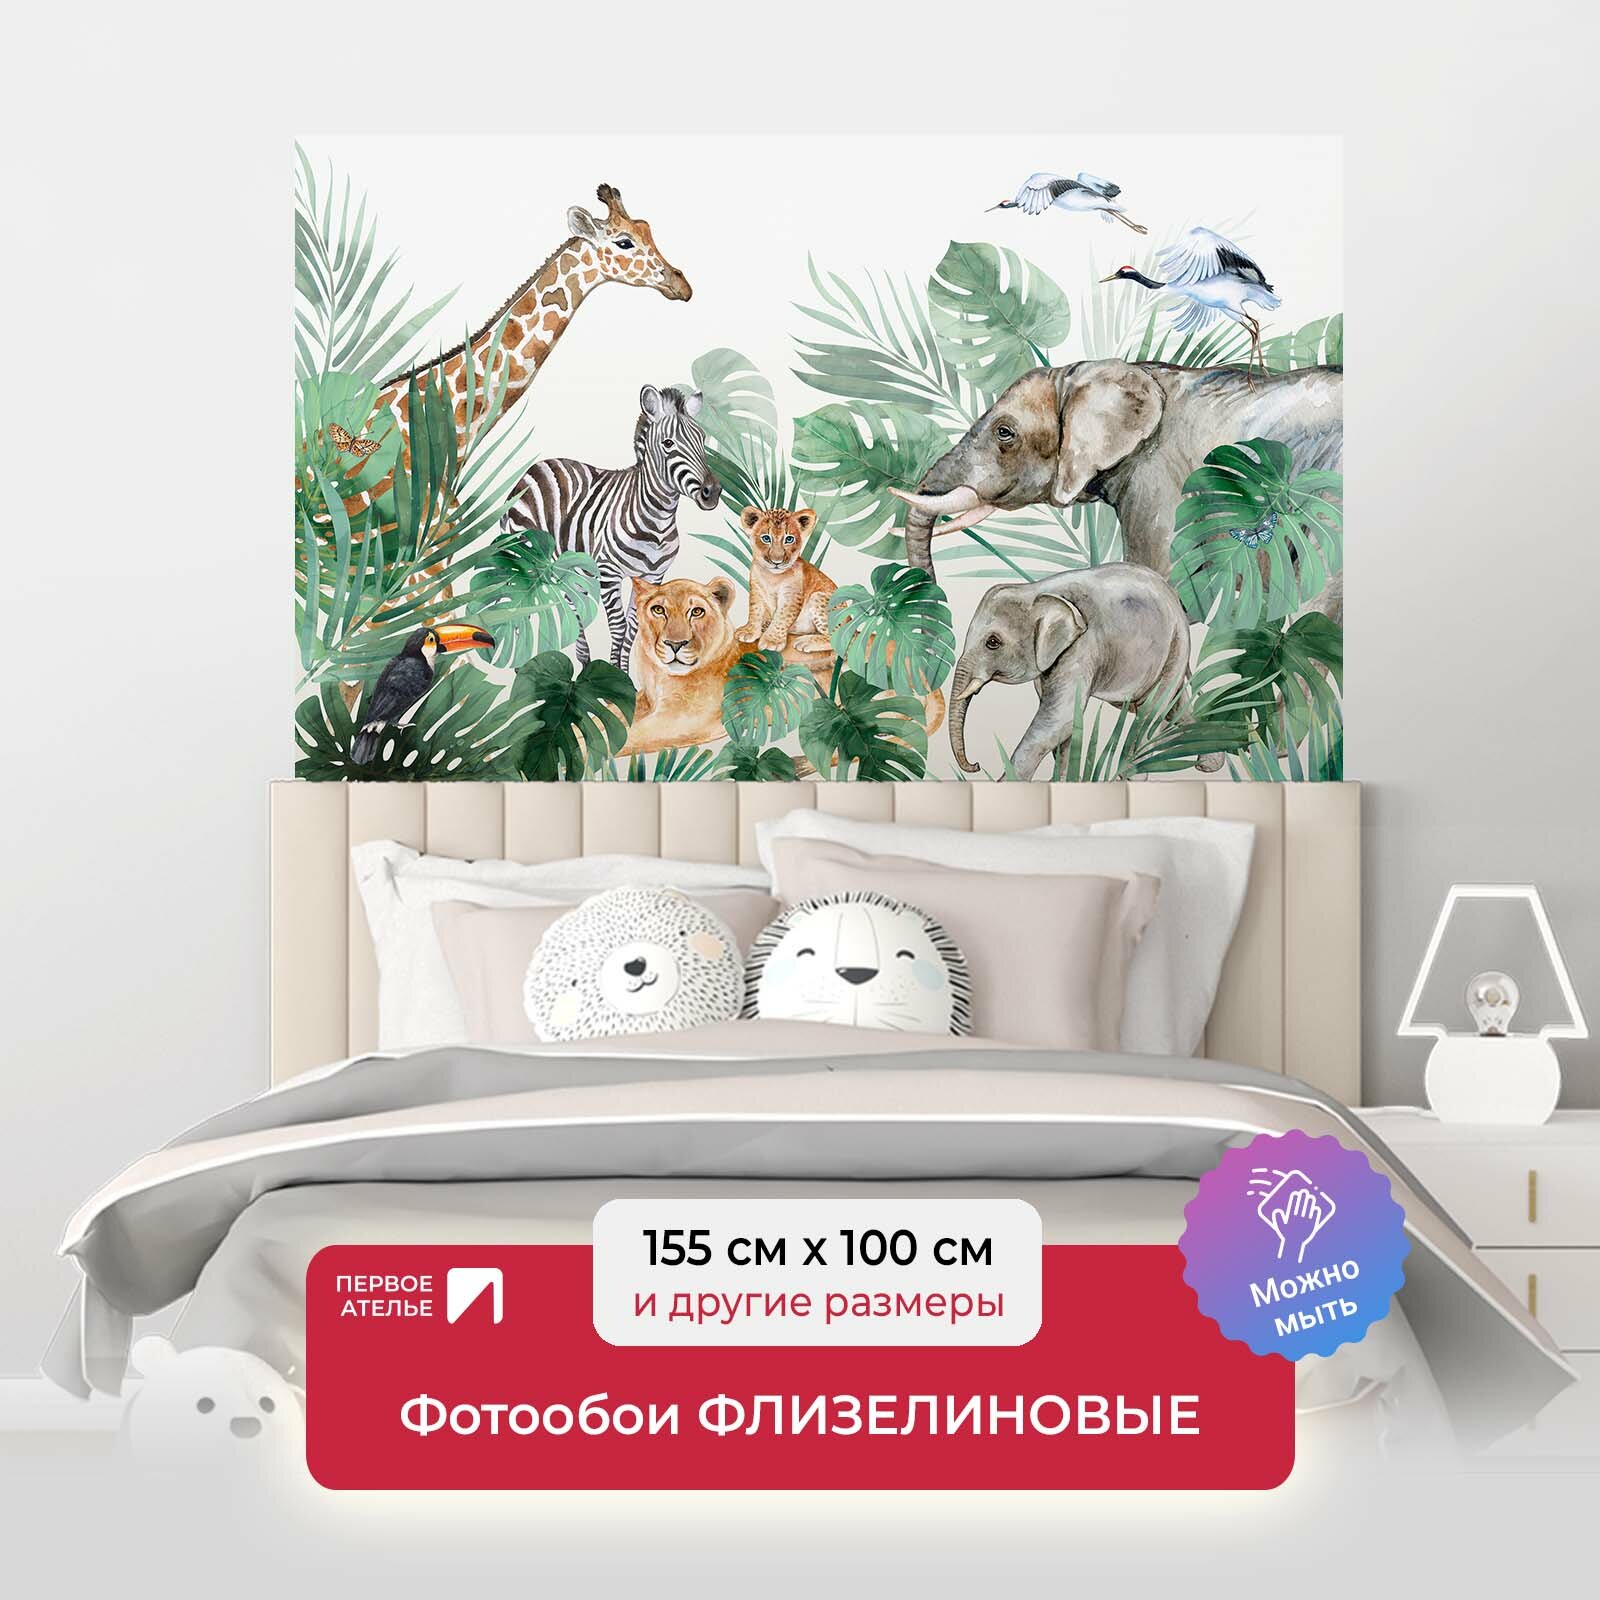 Фотообои на стену первое ателье "Акварельные джунгли с дикими африканскими животными" 155х100 см (ШхВ), флизелиновые Premium